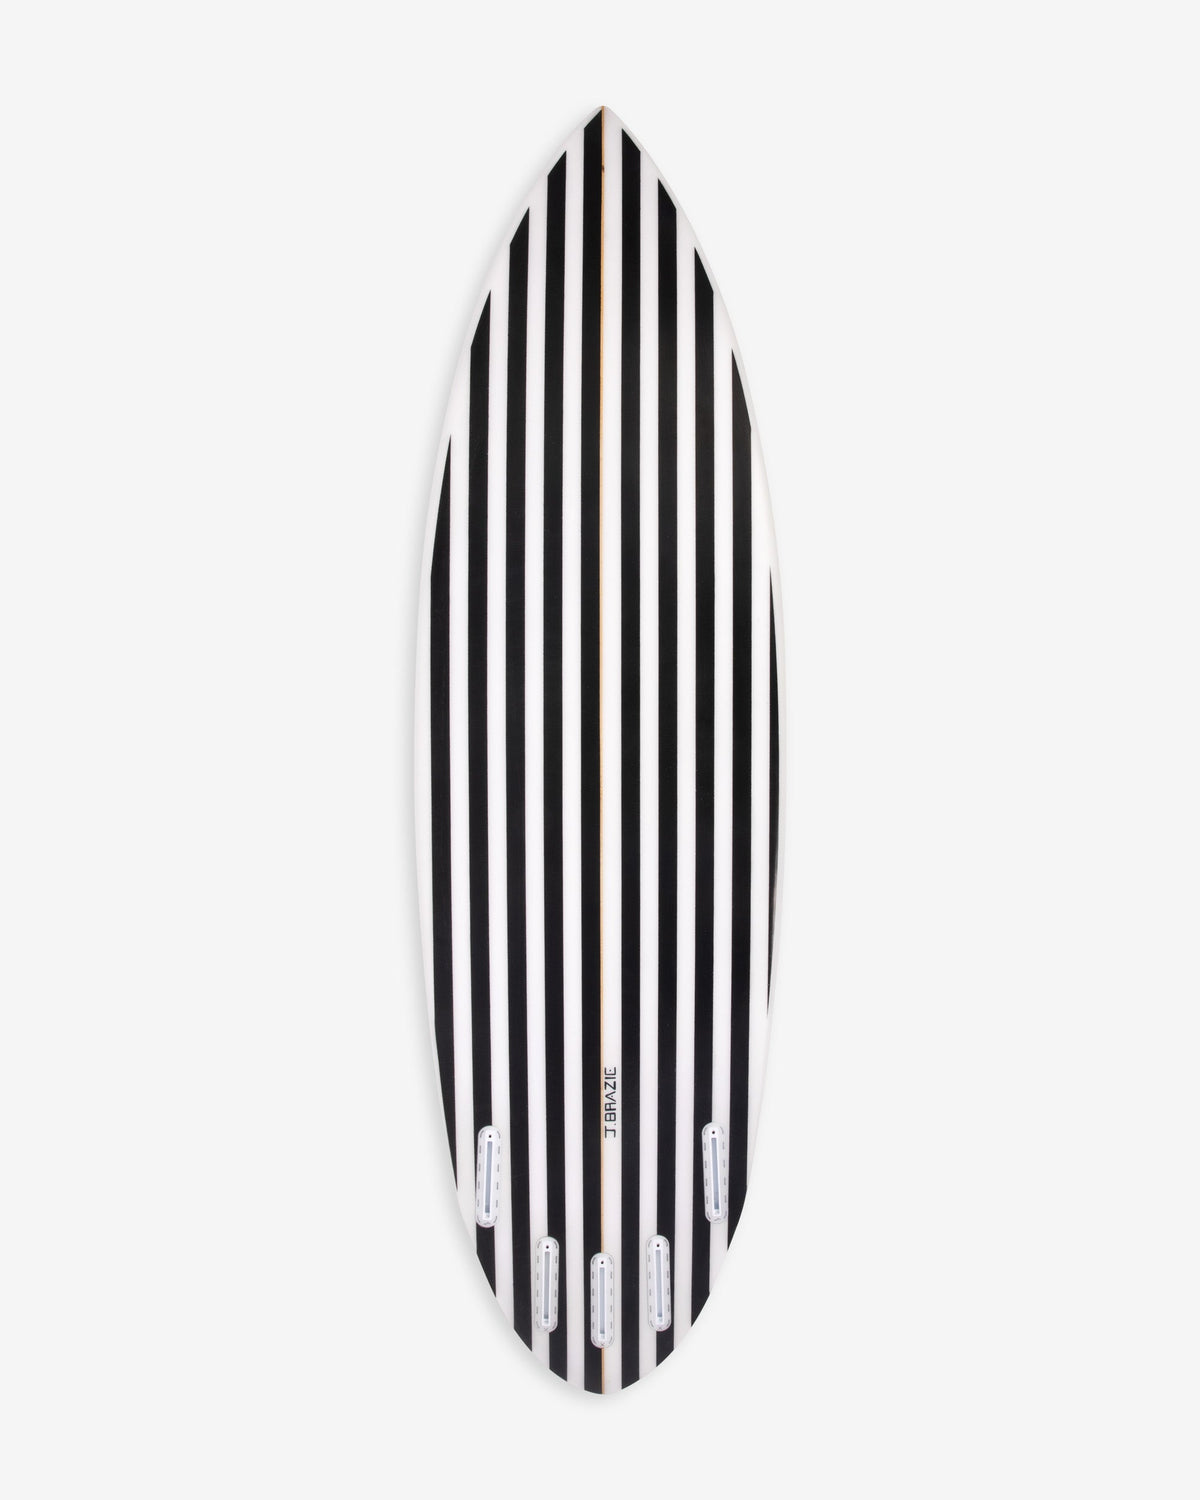 Striper Surfboard